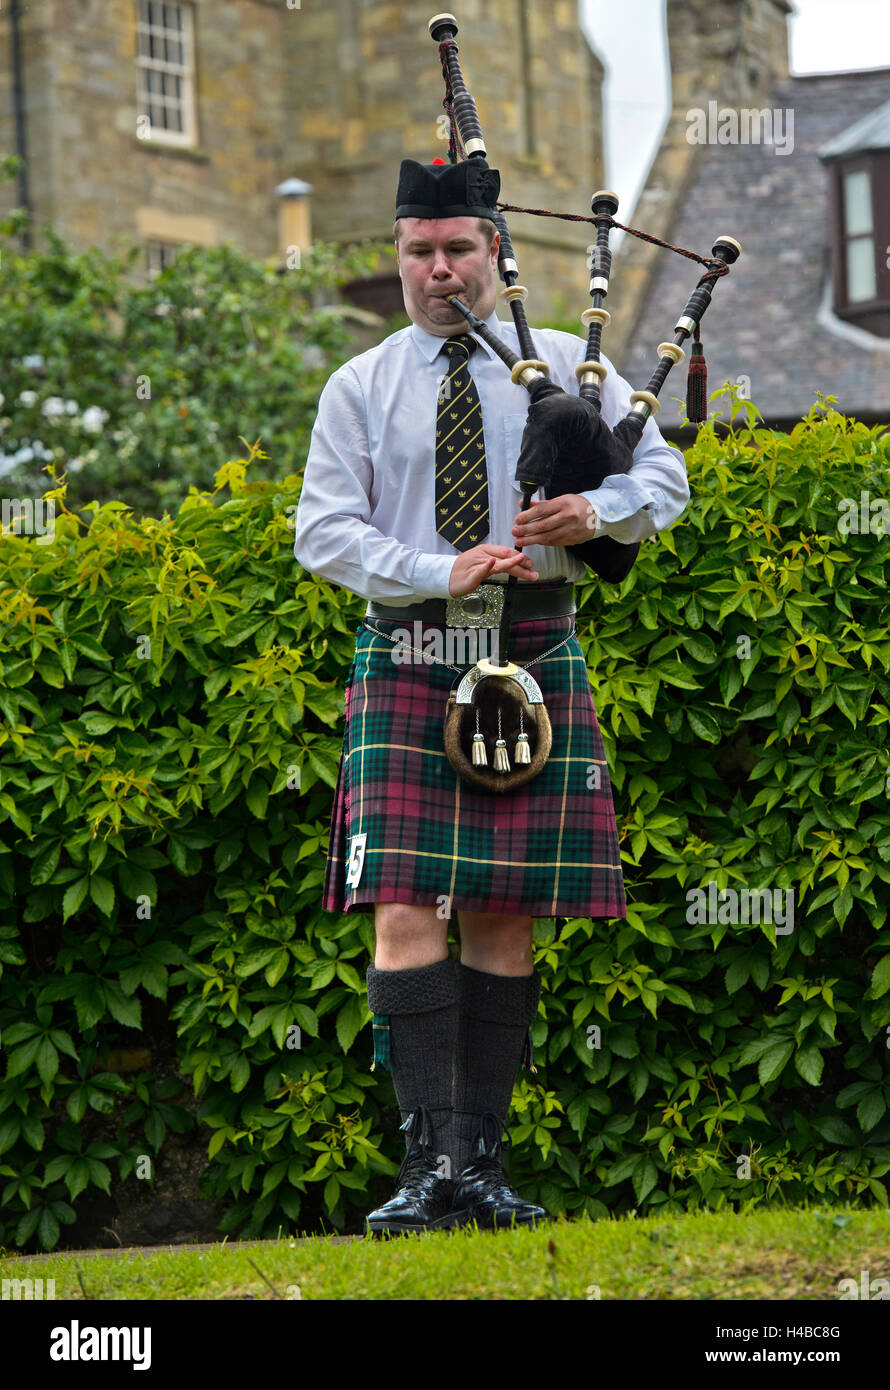 Solo-Dudelsackpfeifer Dudelsack im Kilt, Dudelsackspieler Musikwettbewerb,  Ceres Highland Games, Ceres, Schottland, Vereinigtes Königreich  Stockfotografie - Alamy